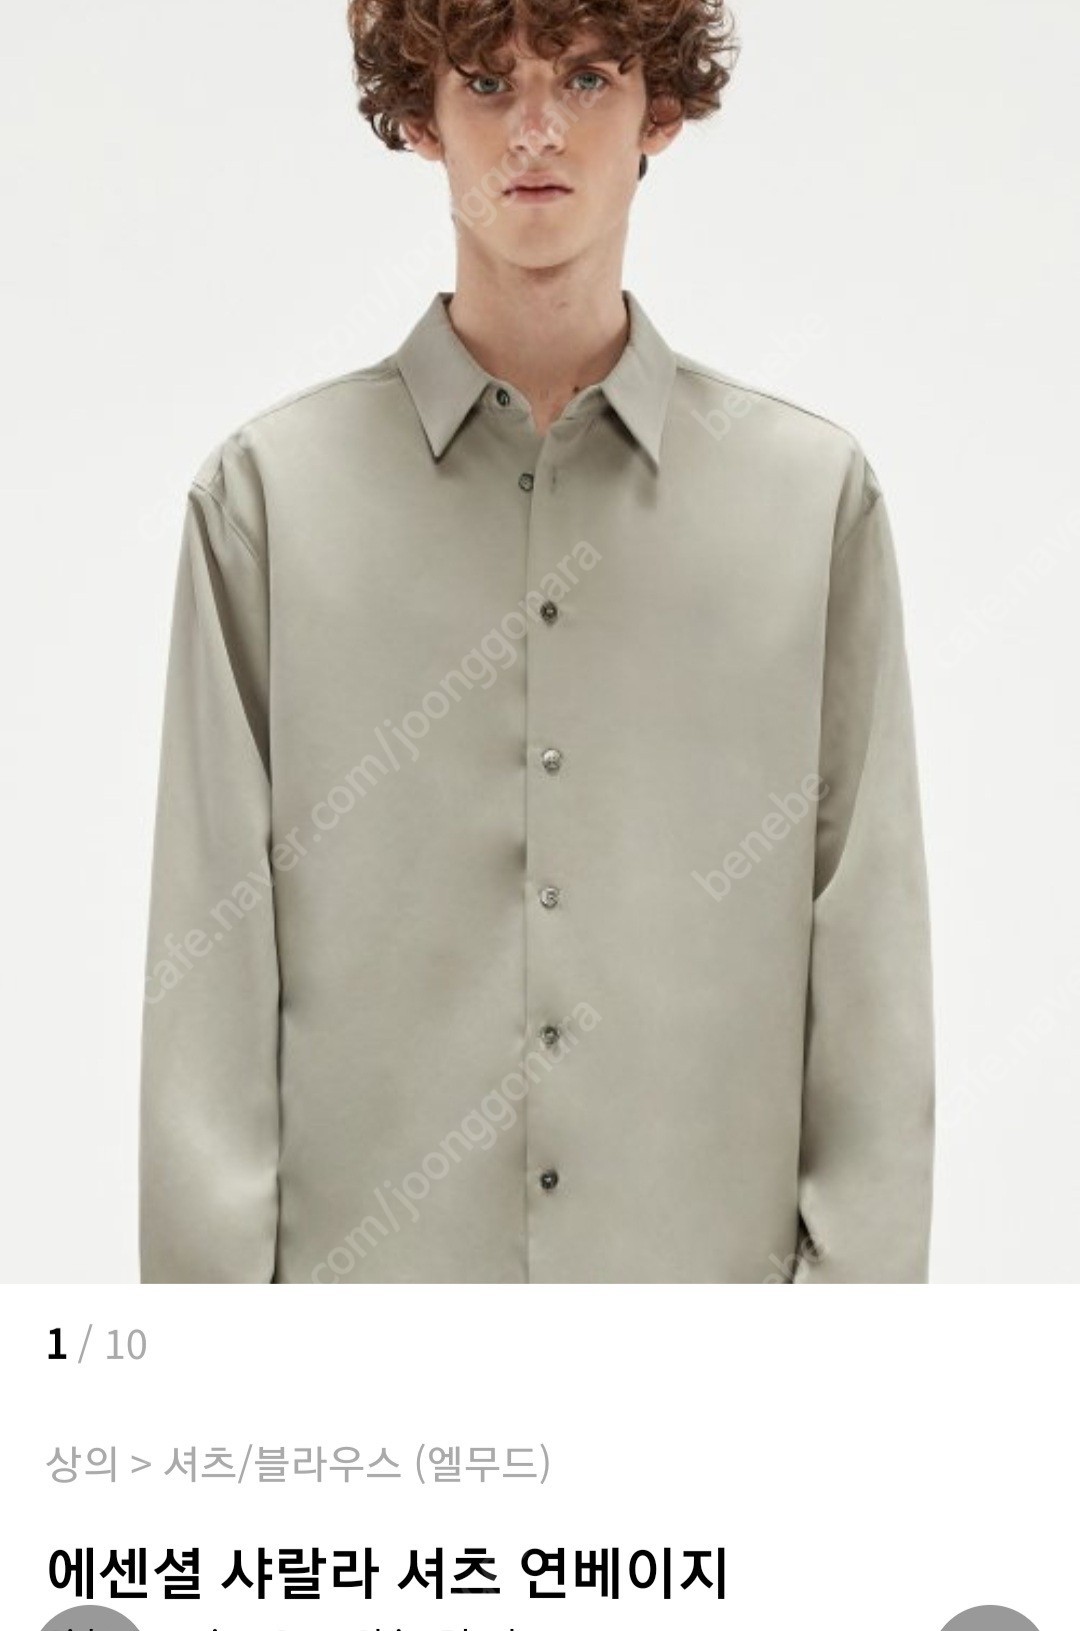 (새상품)엘무드 에센셜 샤랄라 셔츠 연베이지 48(105)사이즈 4에 팔아요